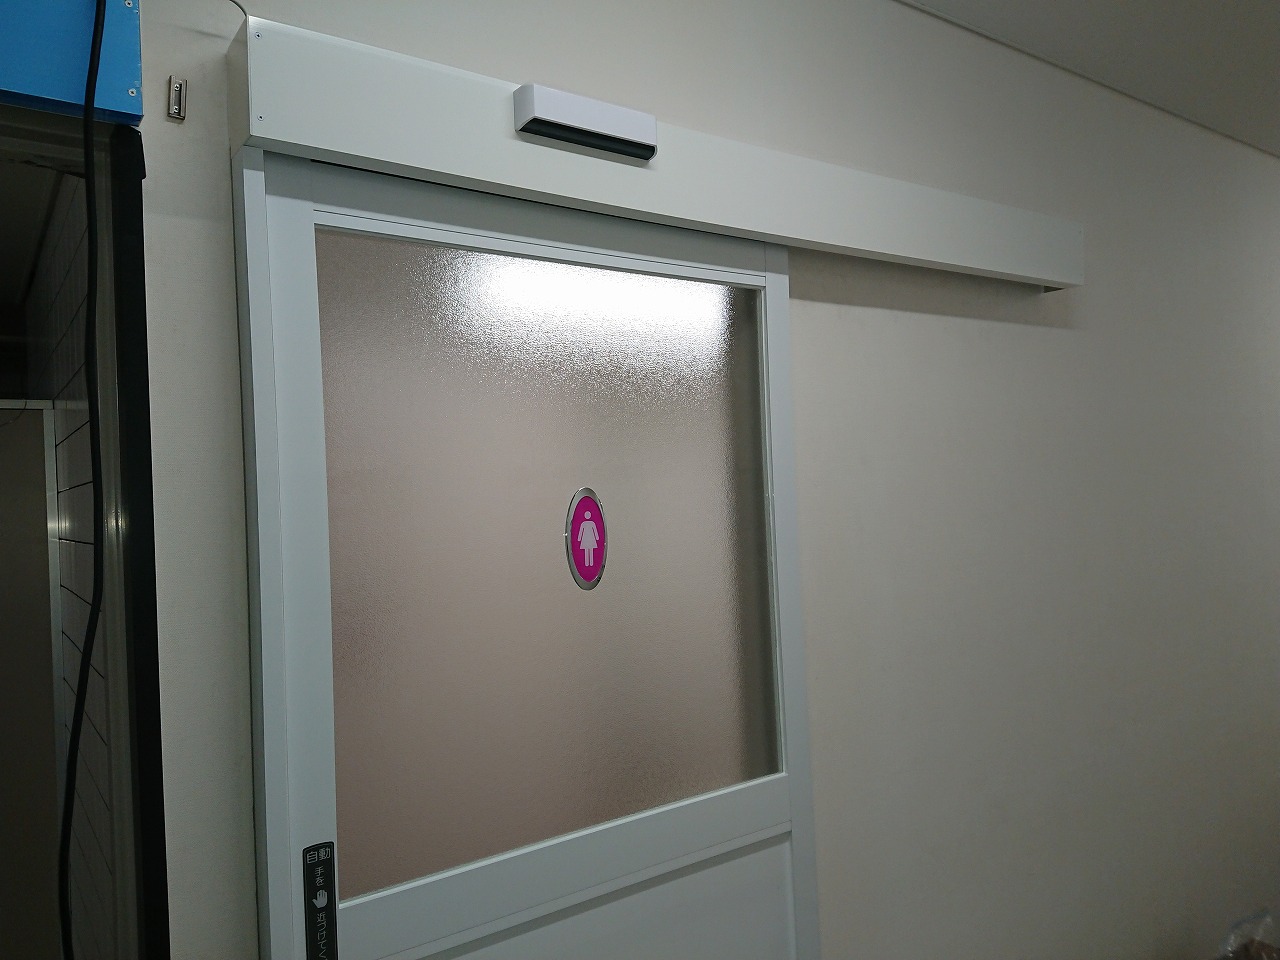 Haccp対応 トイレの開き戸を後付けで引き戸の自動ドアに 群馬 Fas07事例 自動ドア後付け設置ならファースト レイズ